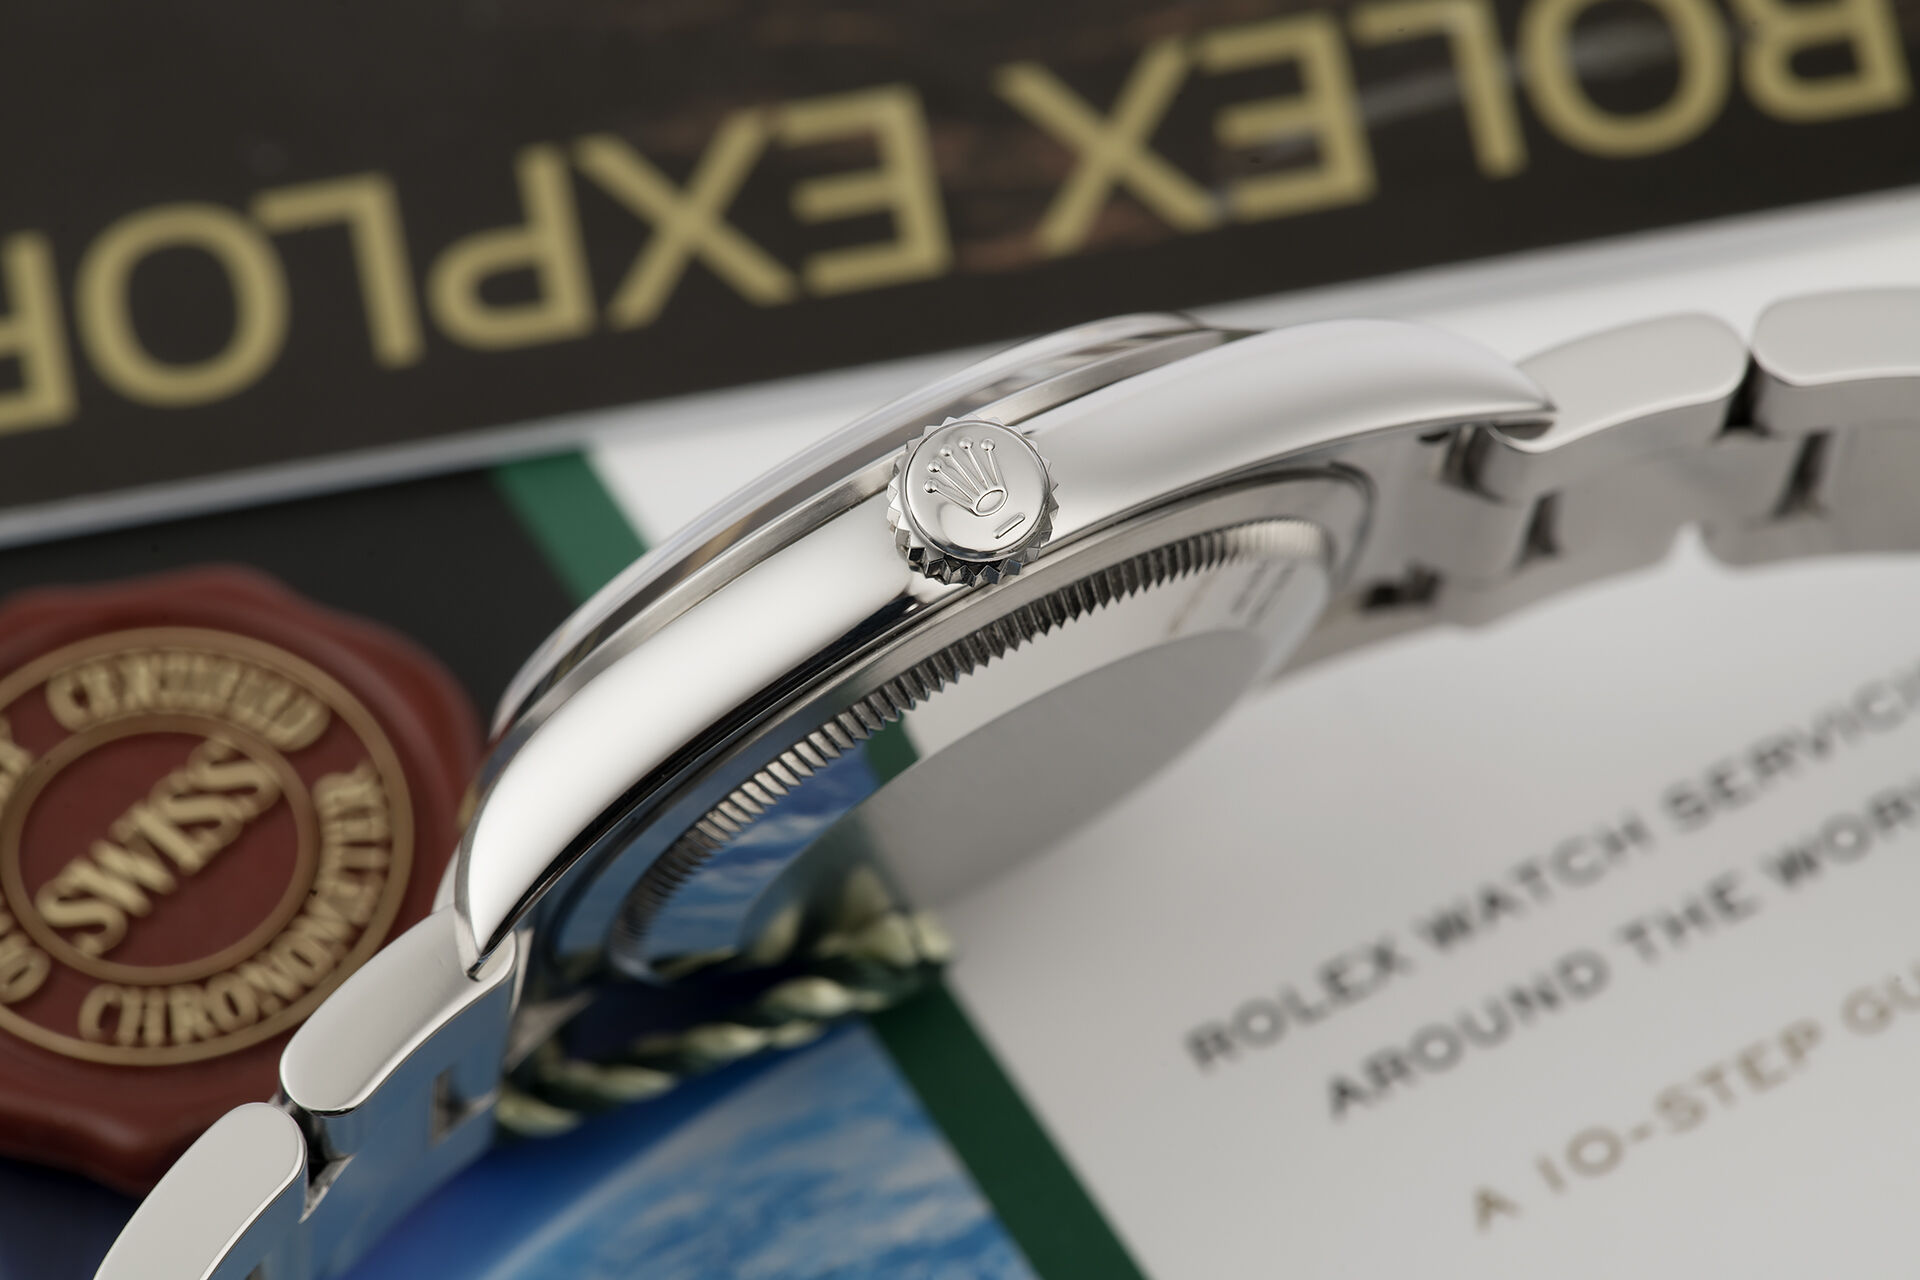 ref 114270 | Box & Certificate | Rolex Explorer